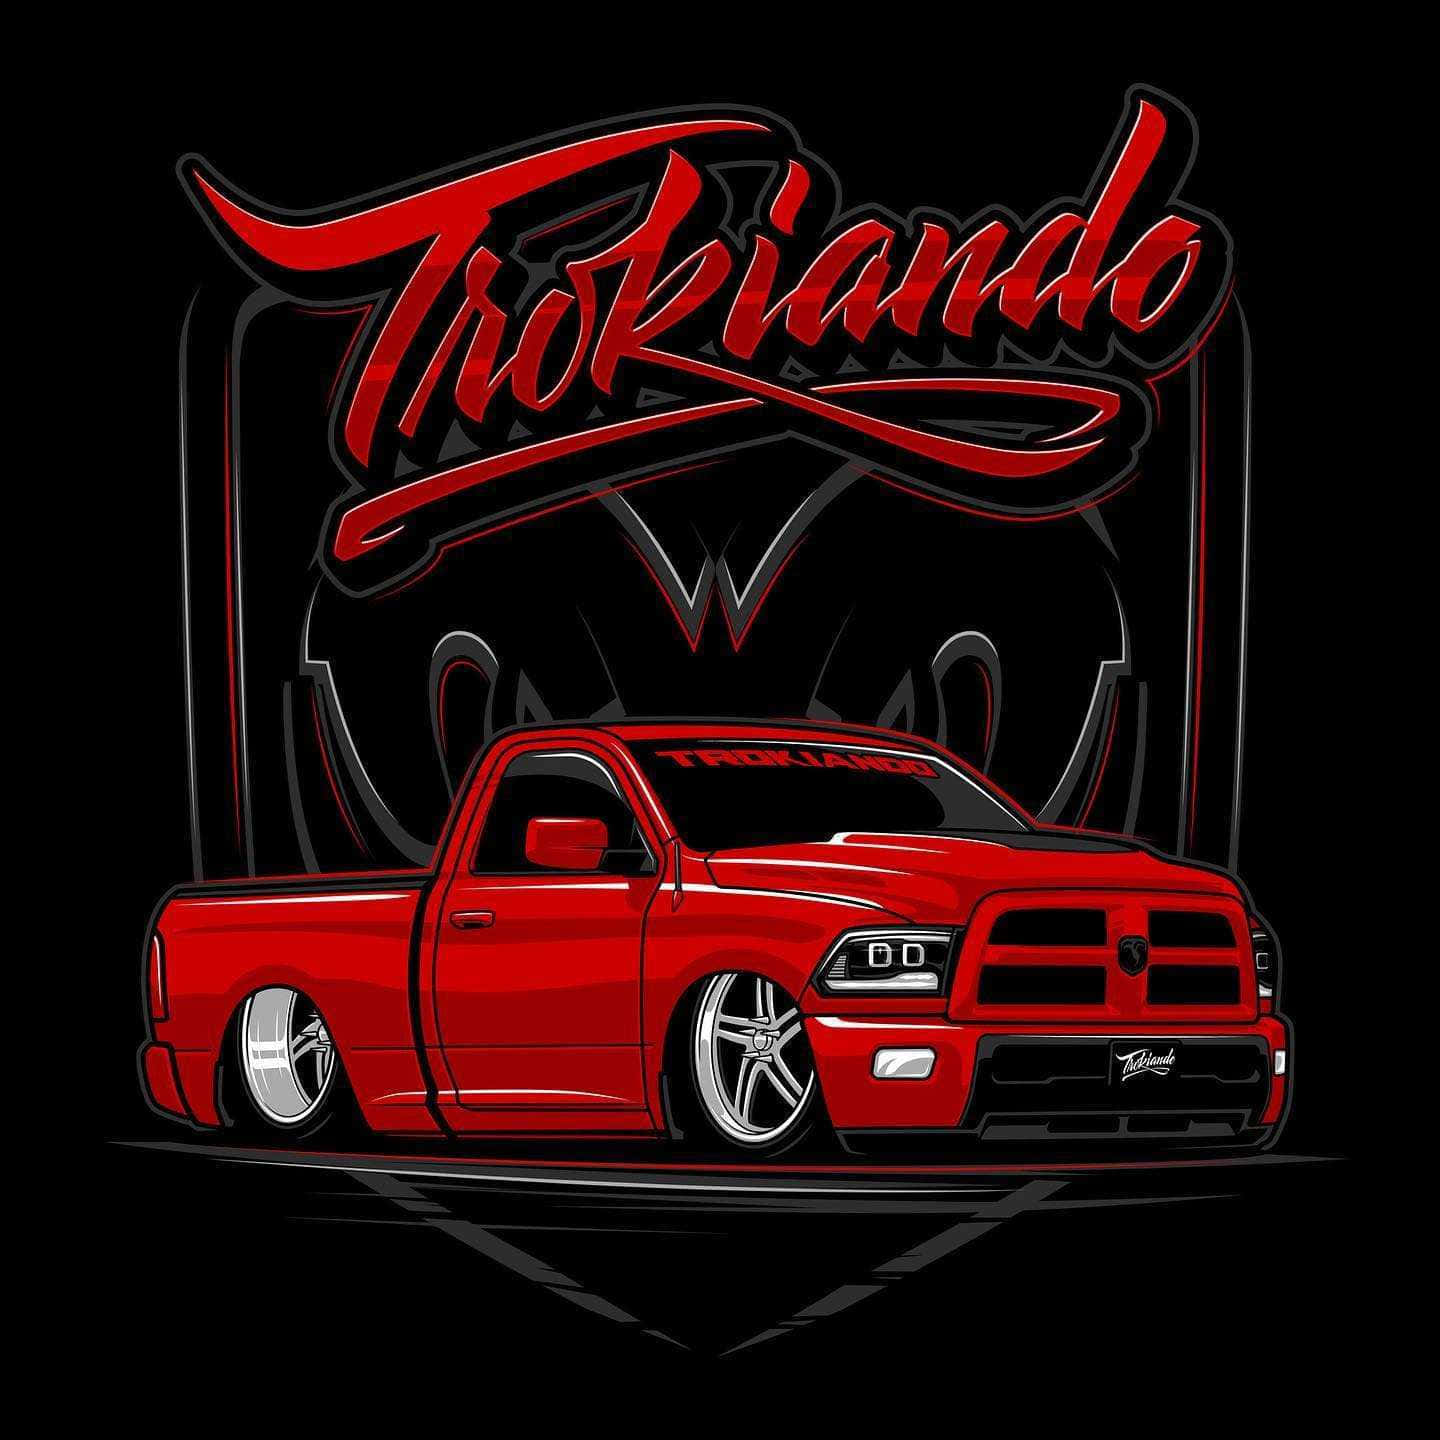 Pickup Truck Red Chevrolet Silverado Trokiando Digital Art Wallpaper